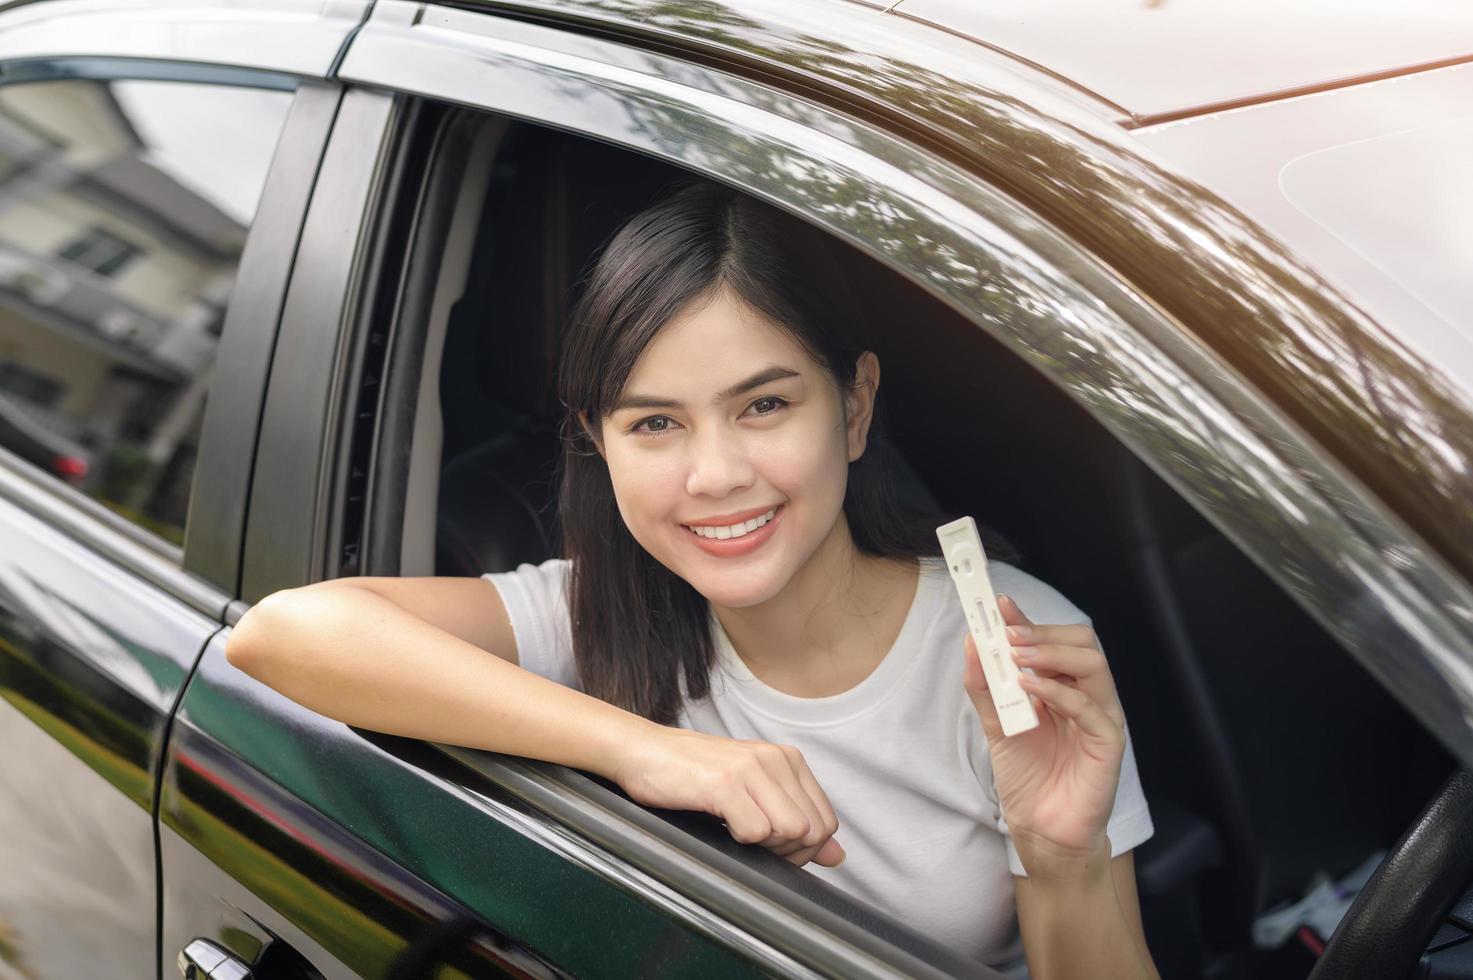 una mujer sosteniendo atk en el auto, haga una prueba de auto-recolección para una prueba covid-19, salud y seguridad foto